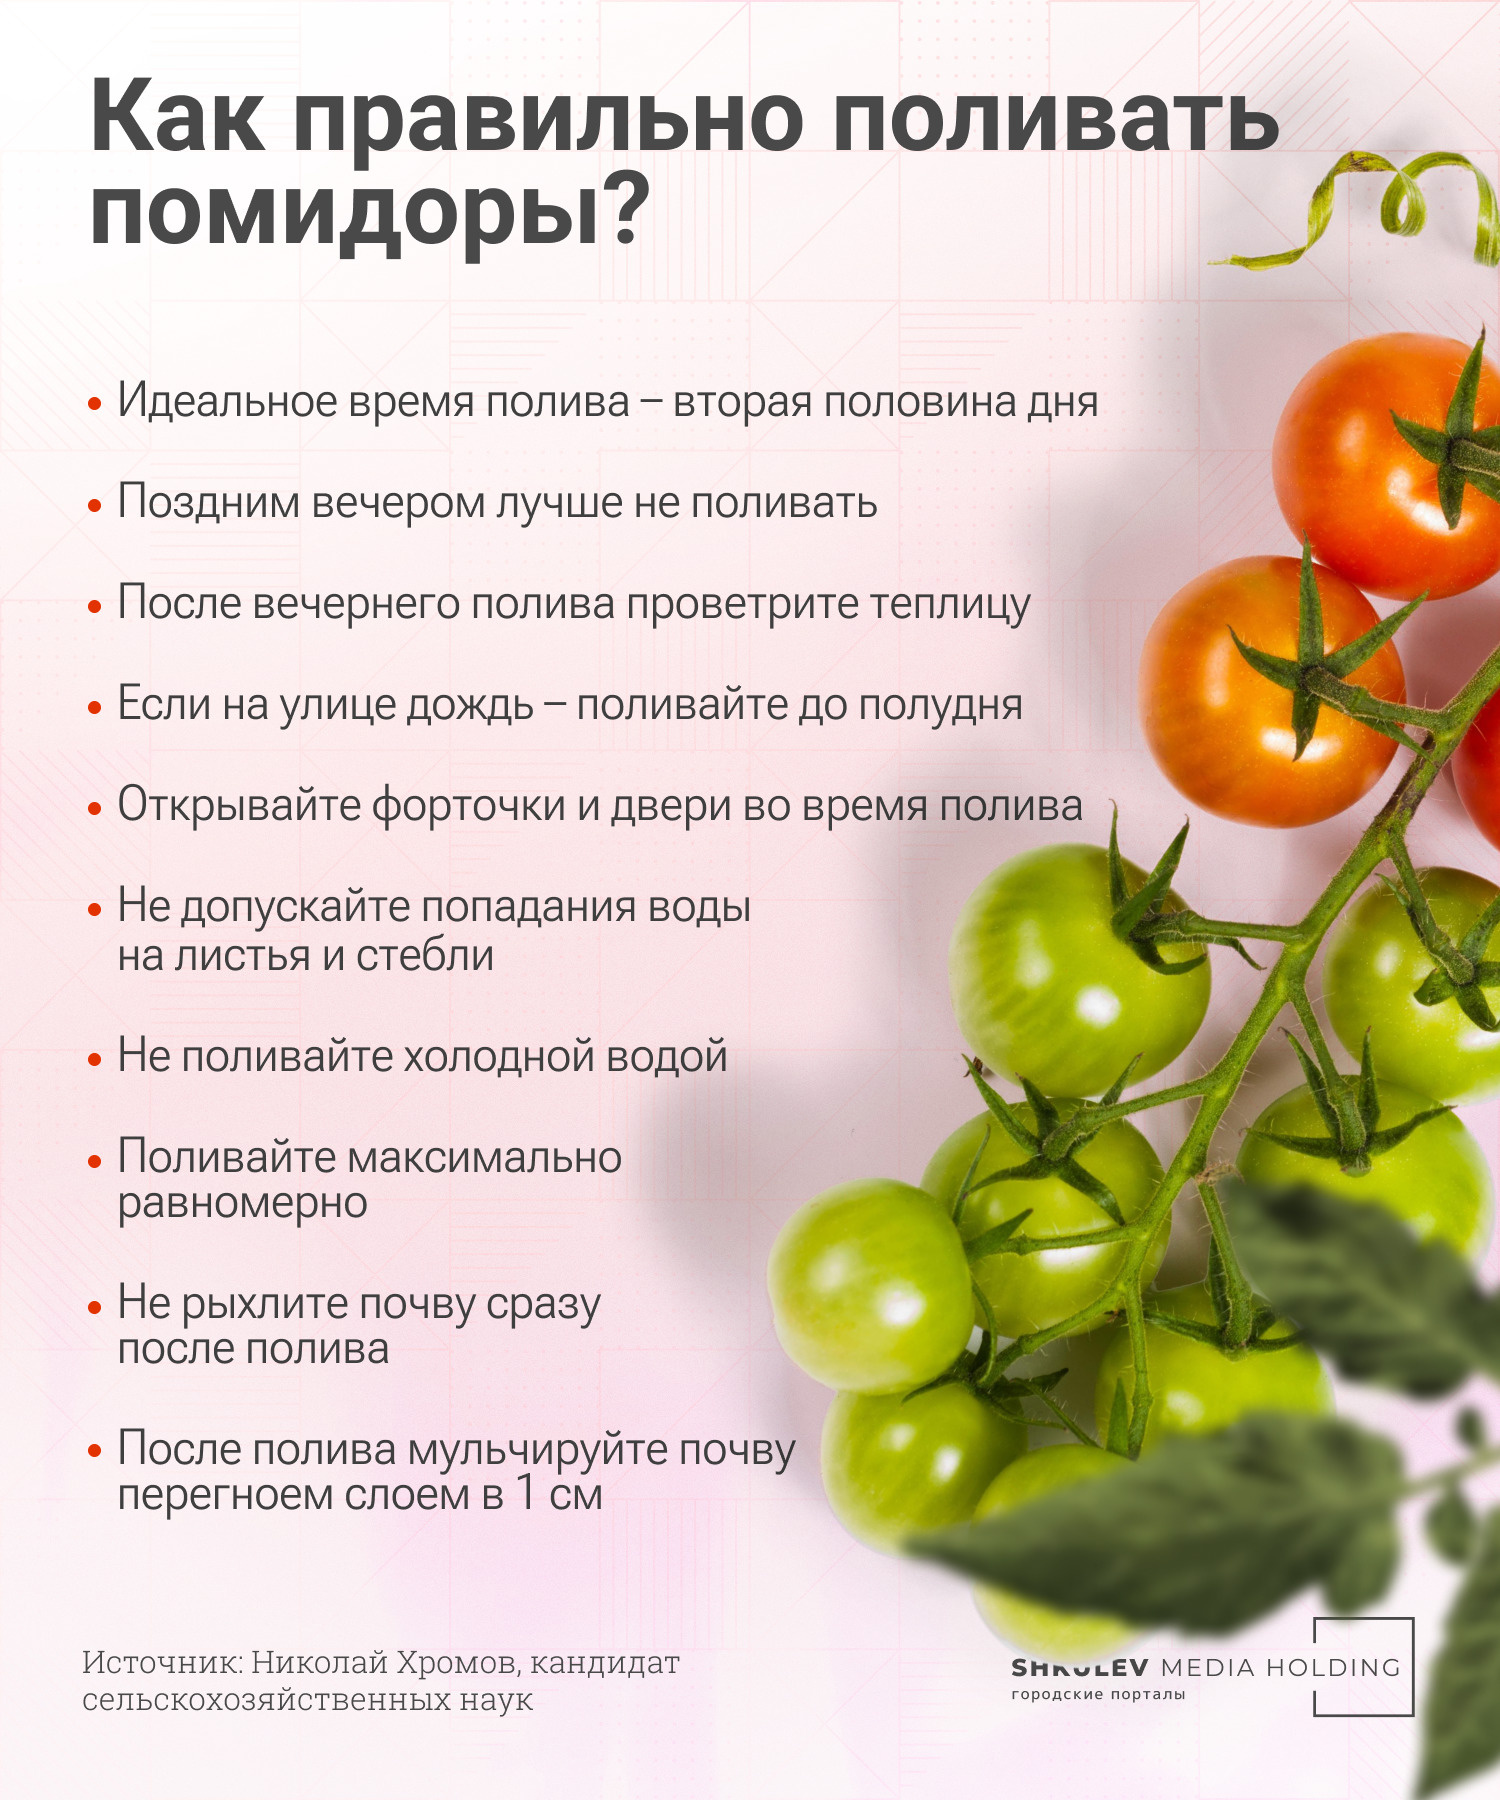 Простые правила полива помидоров